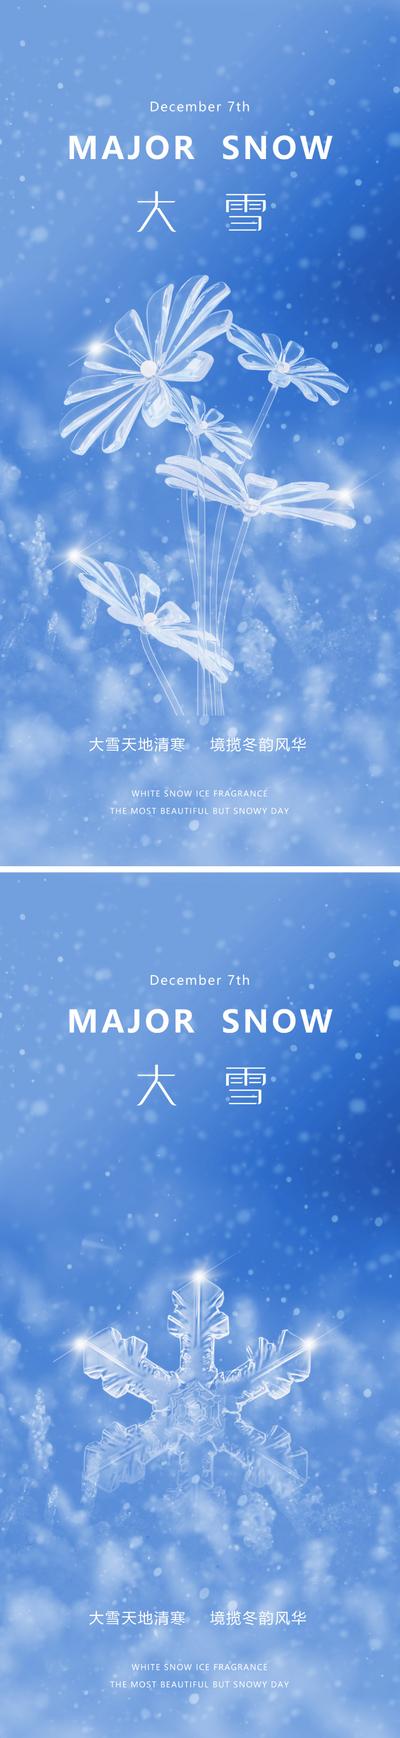 南门网 广告 海报 地产 大雪 节气 质感 美业 水晶 花卉 雪花 下雪 冬天 唯美 意境 淡雅 高级